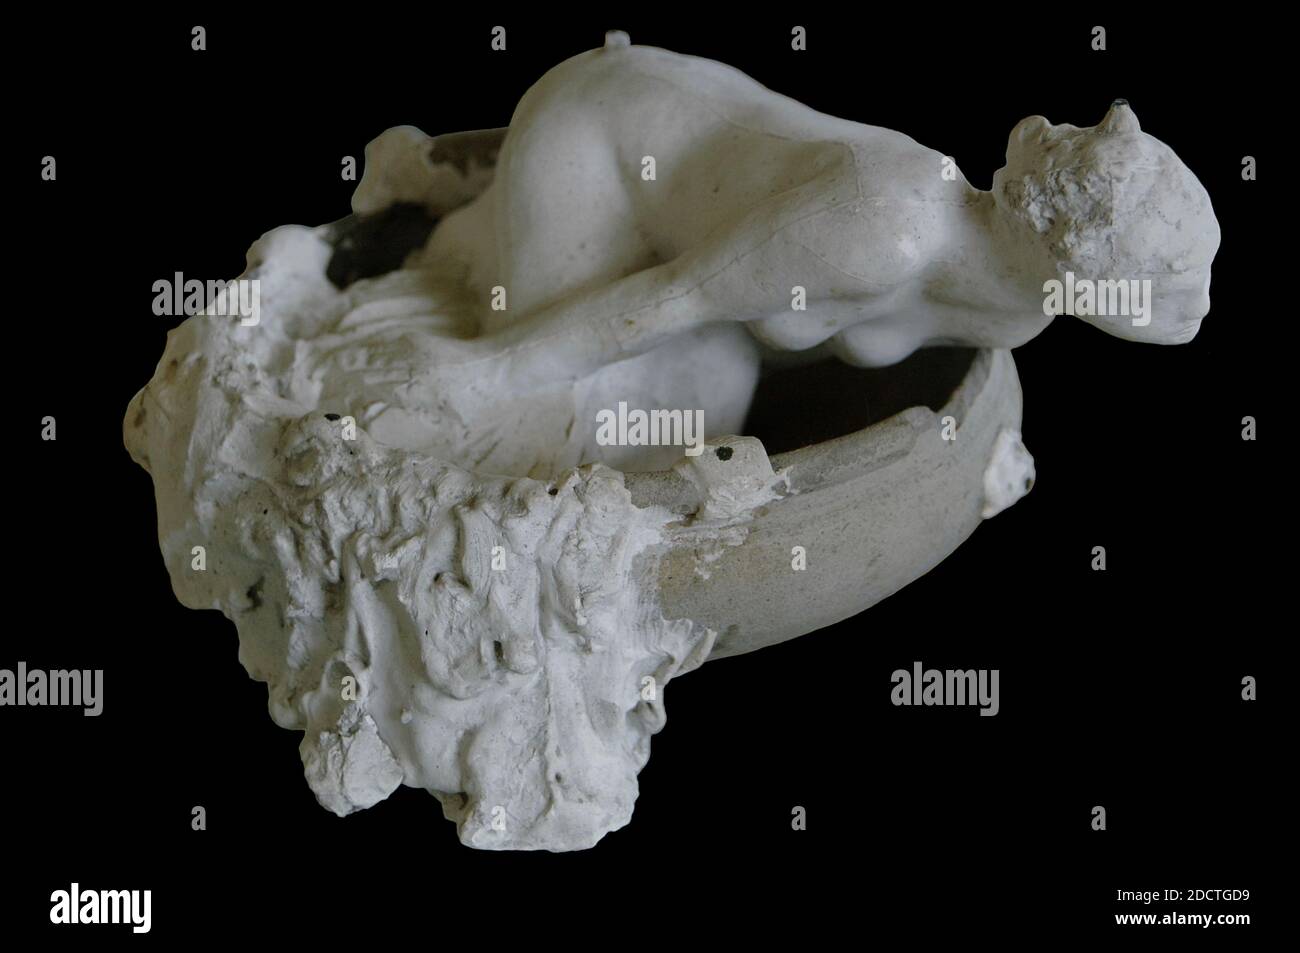 Auguste Rodin (1840-1917). Sculpteur français. La petite fée d'eau. Modèle de marbre S. 1106 exécuté en 1903. Plâtre et céramique. Musée Rodin. Paris. France. Banque D'Images